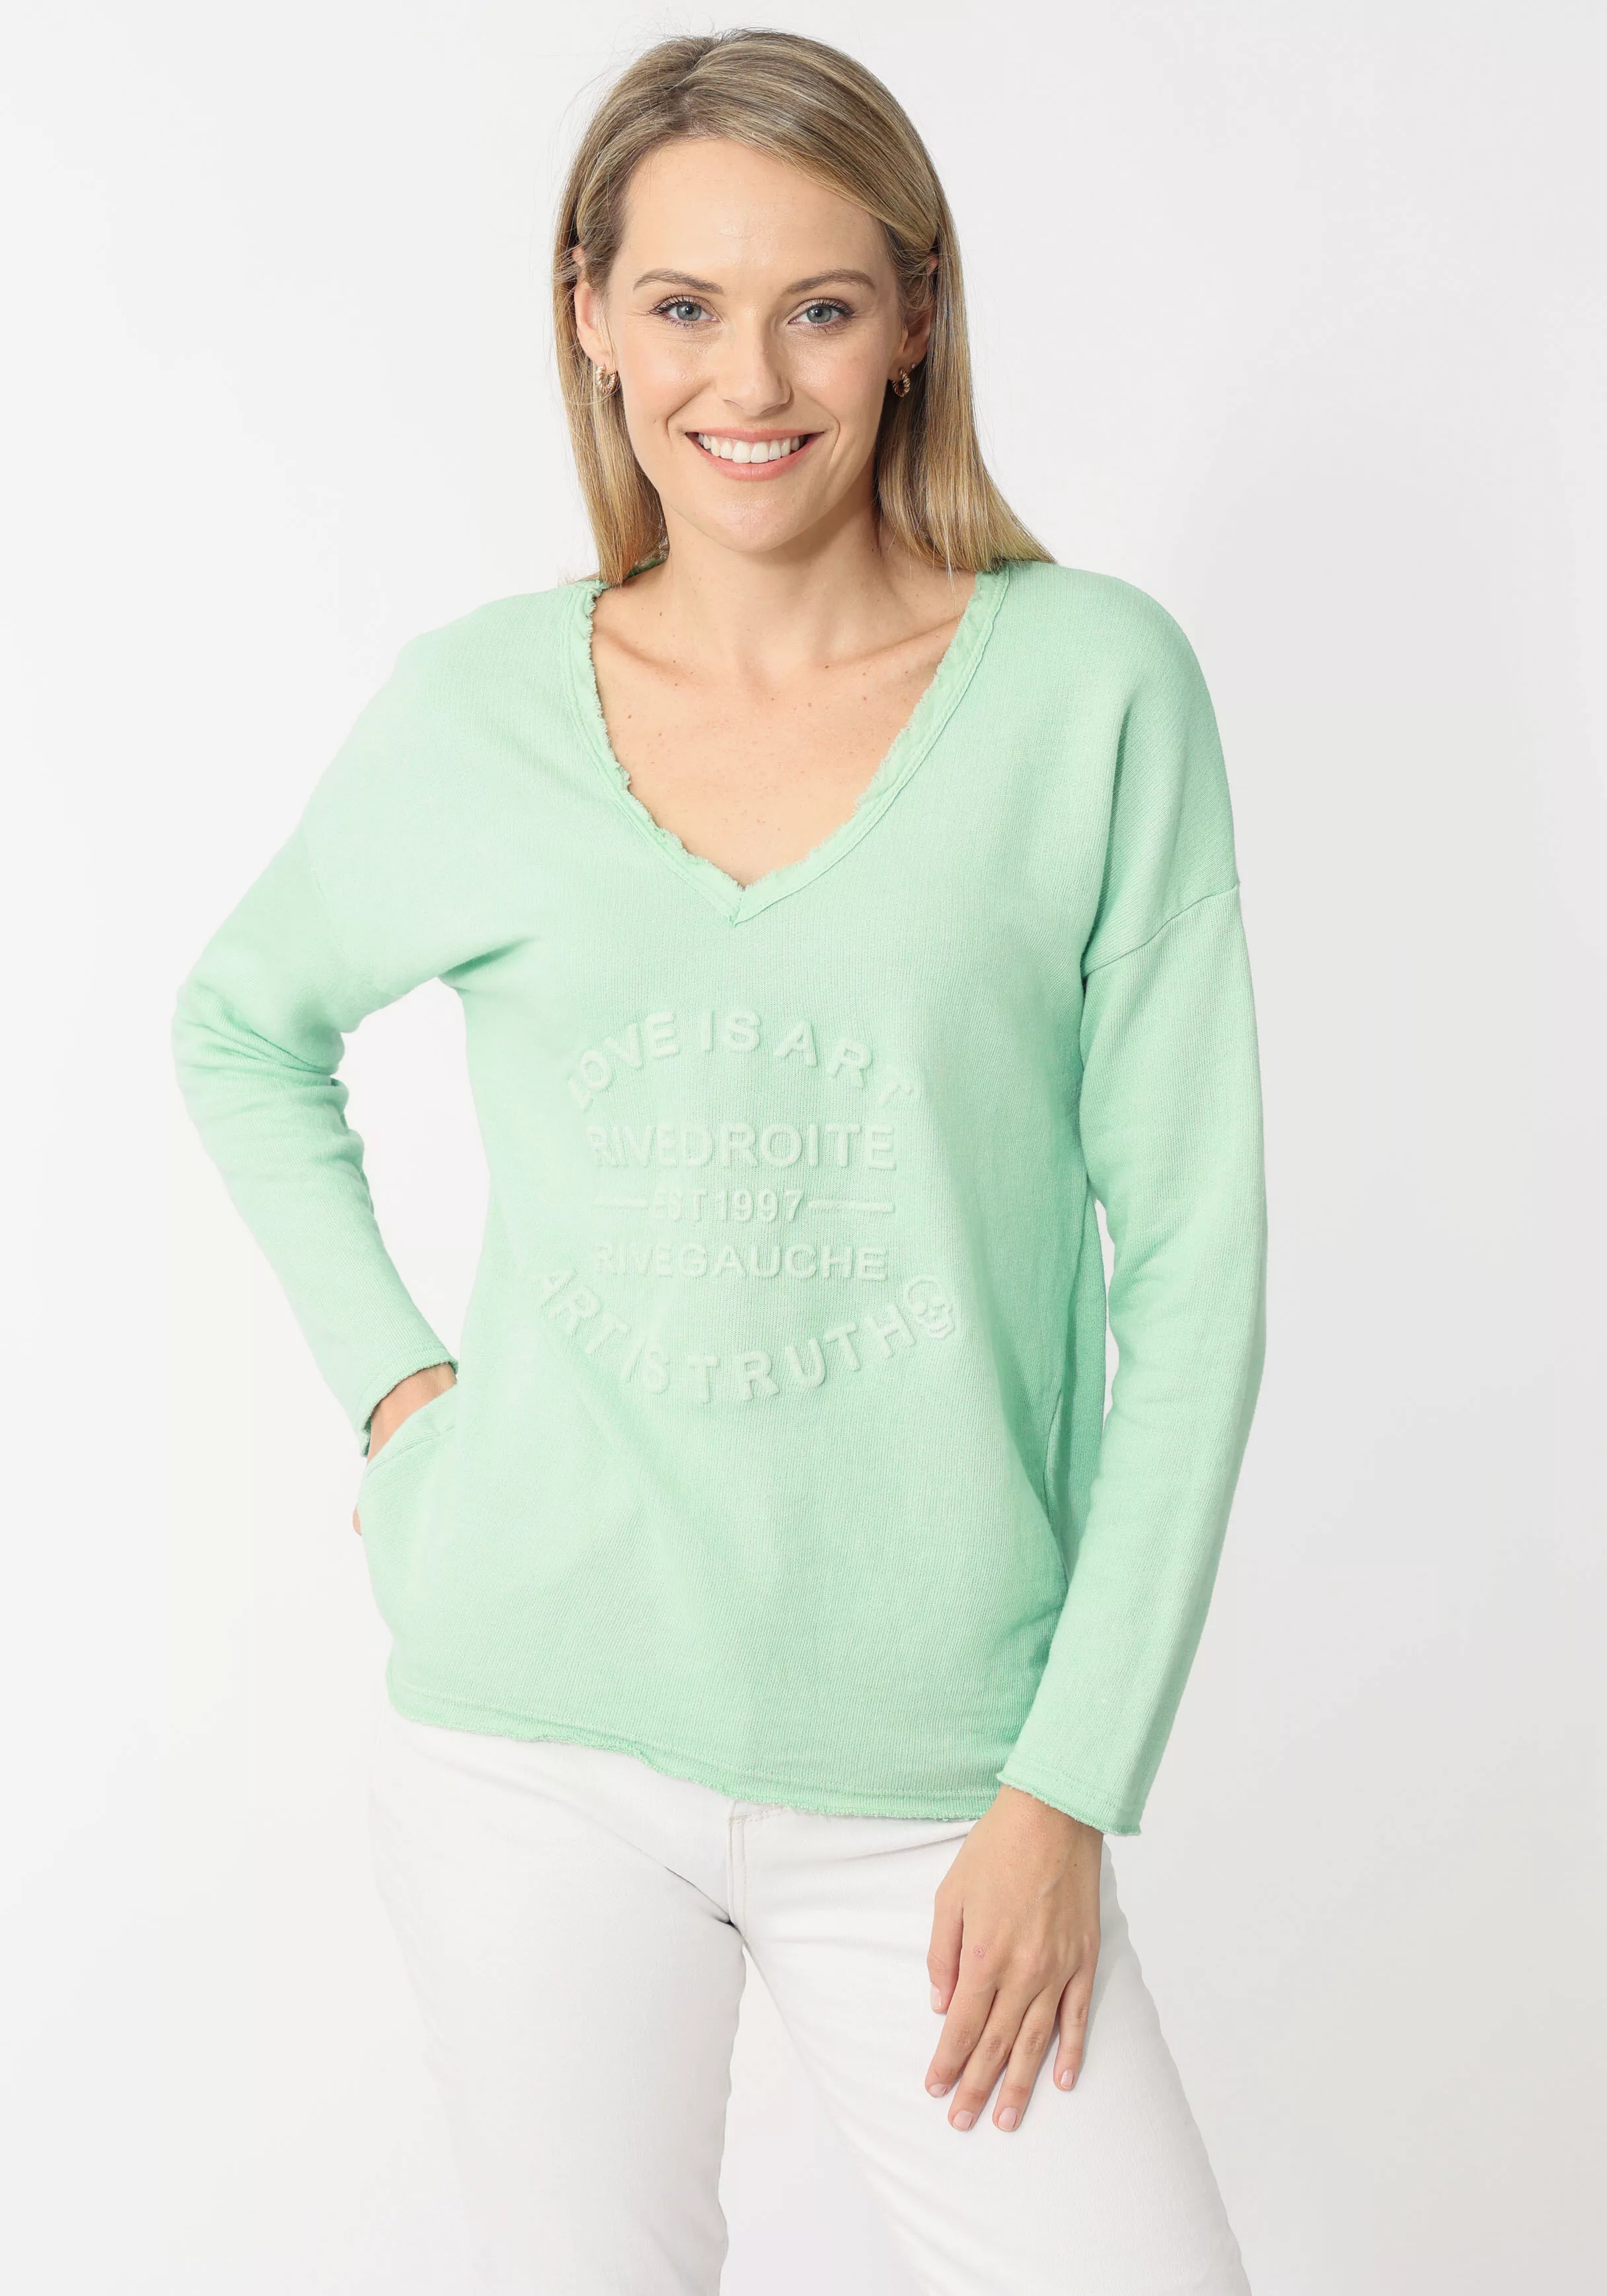 Zwillingsherz Sweatshirt mit tonalem Print vorn günstig online kaufen